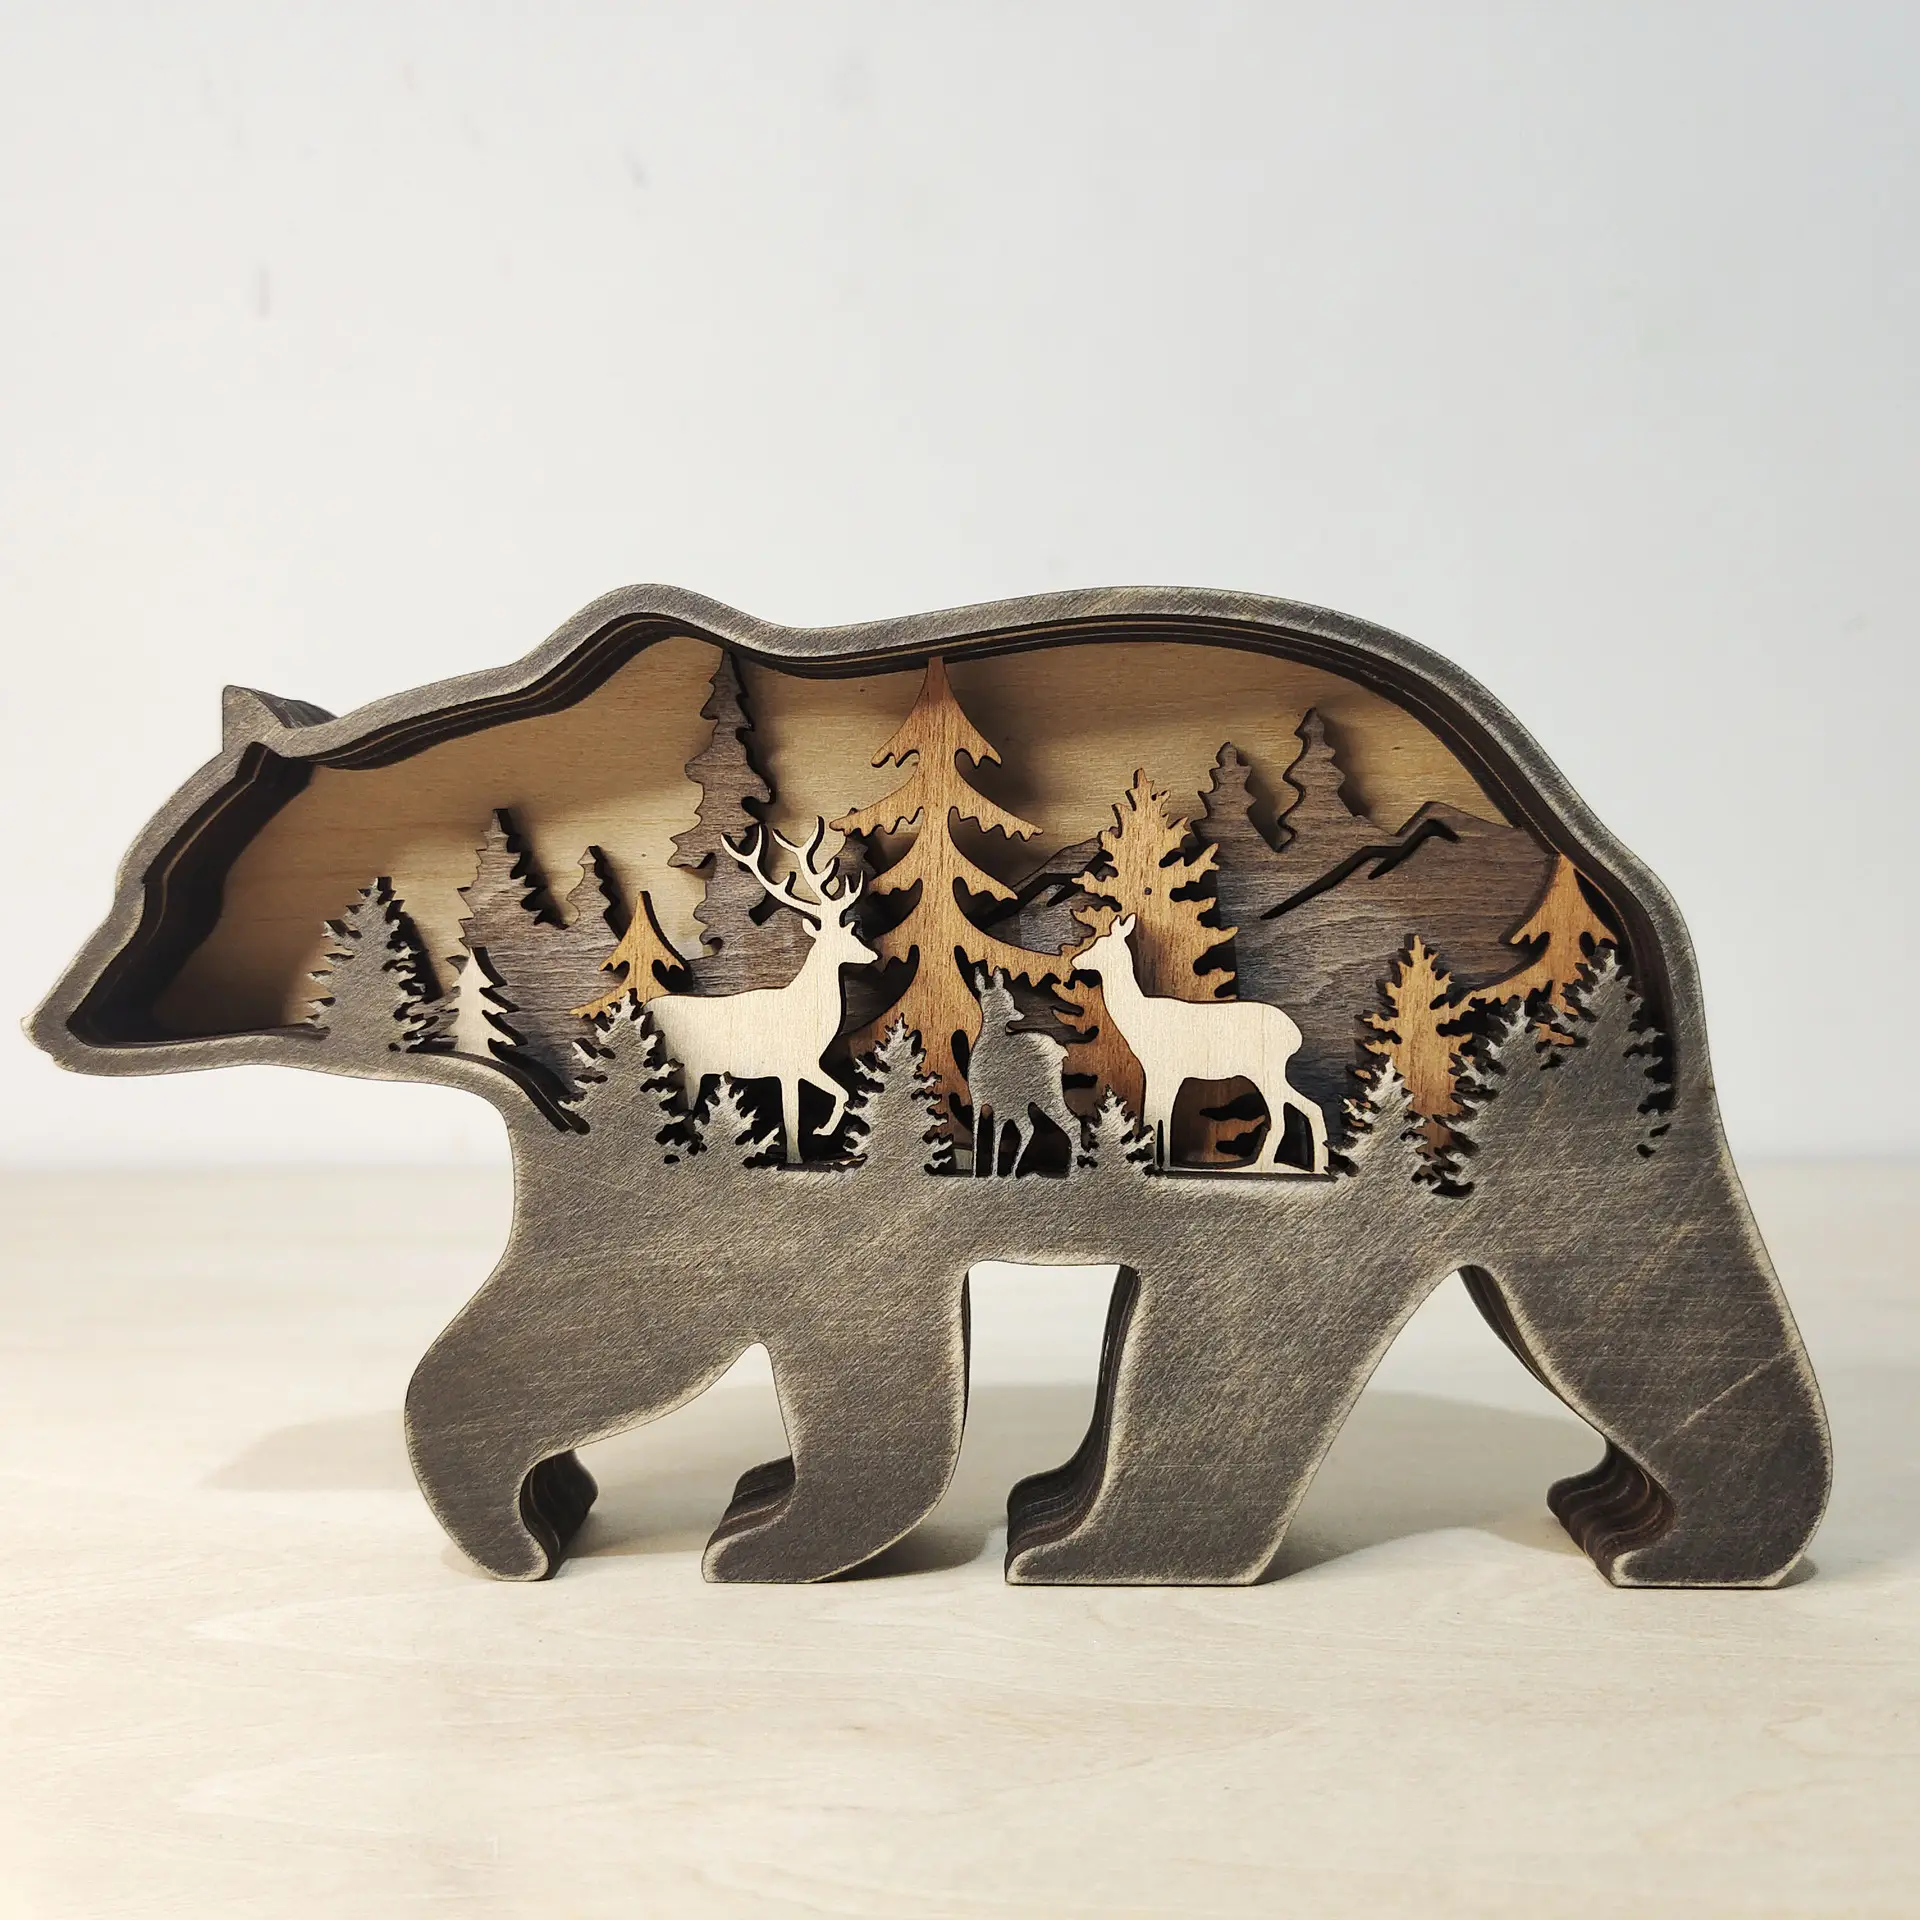 ホット販売ジャパンディ森の動物木製の装飾キャビンのための多層クリエイティブシルエット置物装飾品